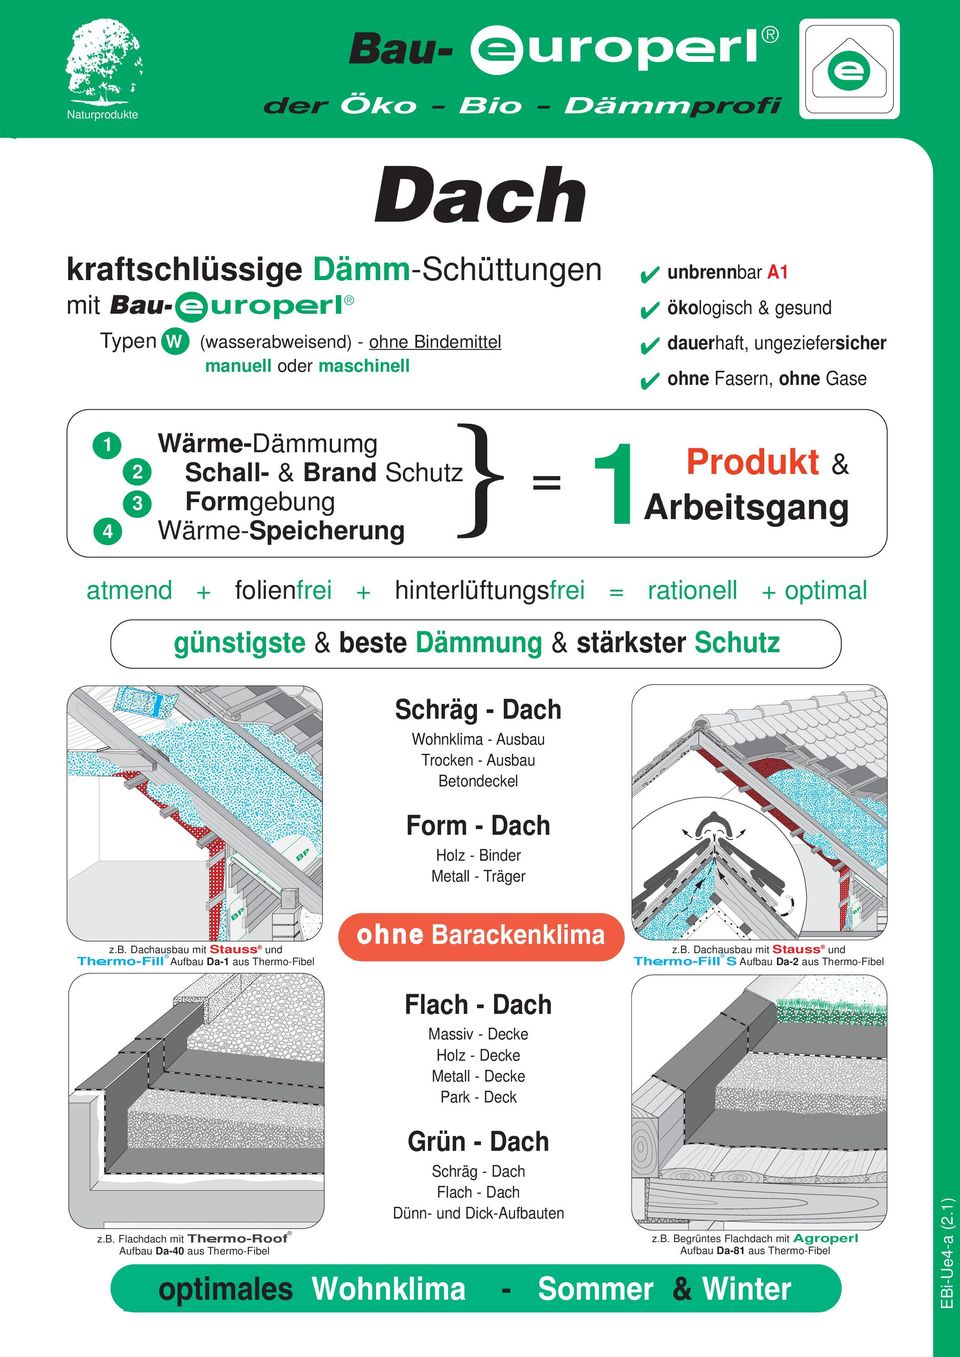 Dachausbau mit Stauss und Thfirmo-Fill S Aufbau Da-2 aus Fibel Flach - Dach Massiv - Decke Holz - Decke Metall - Decke Park - Deck Grün - Dach kraftschlüssige Dämm-Schüttungen mit Bau- uropfirl Typen